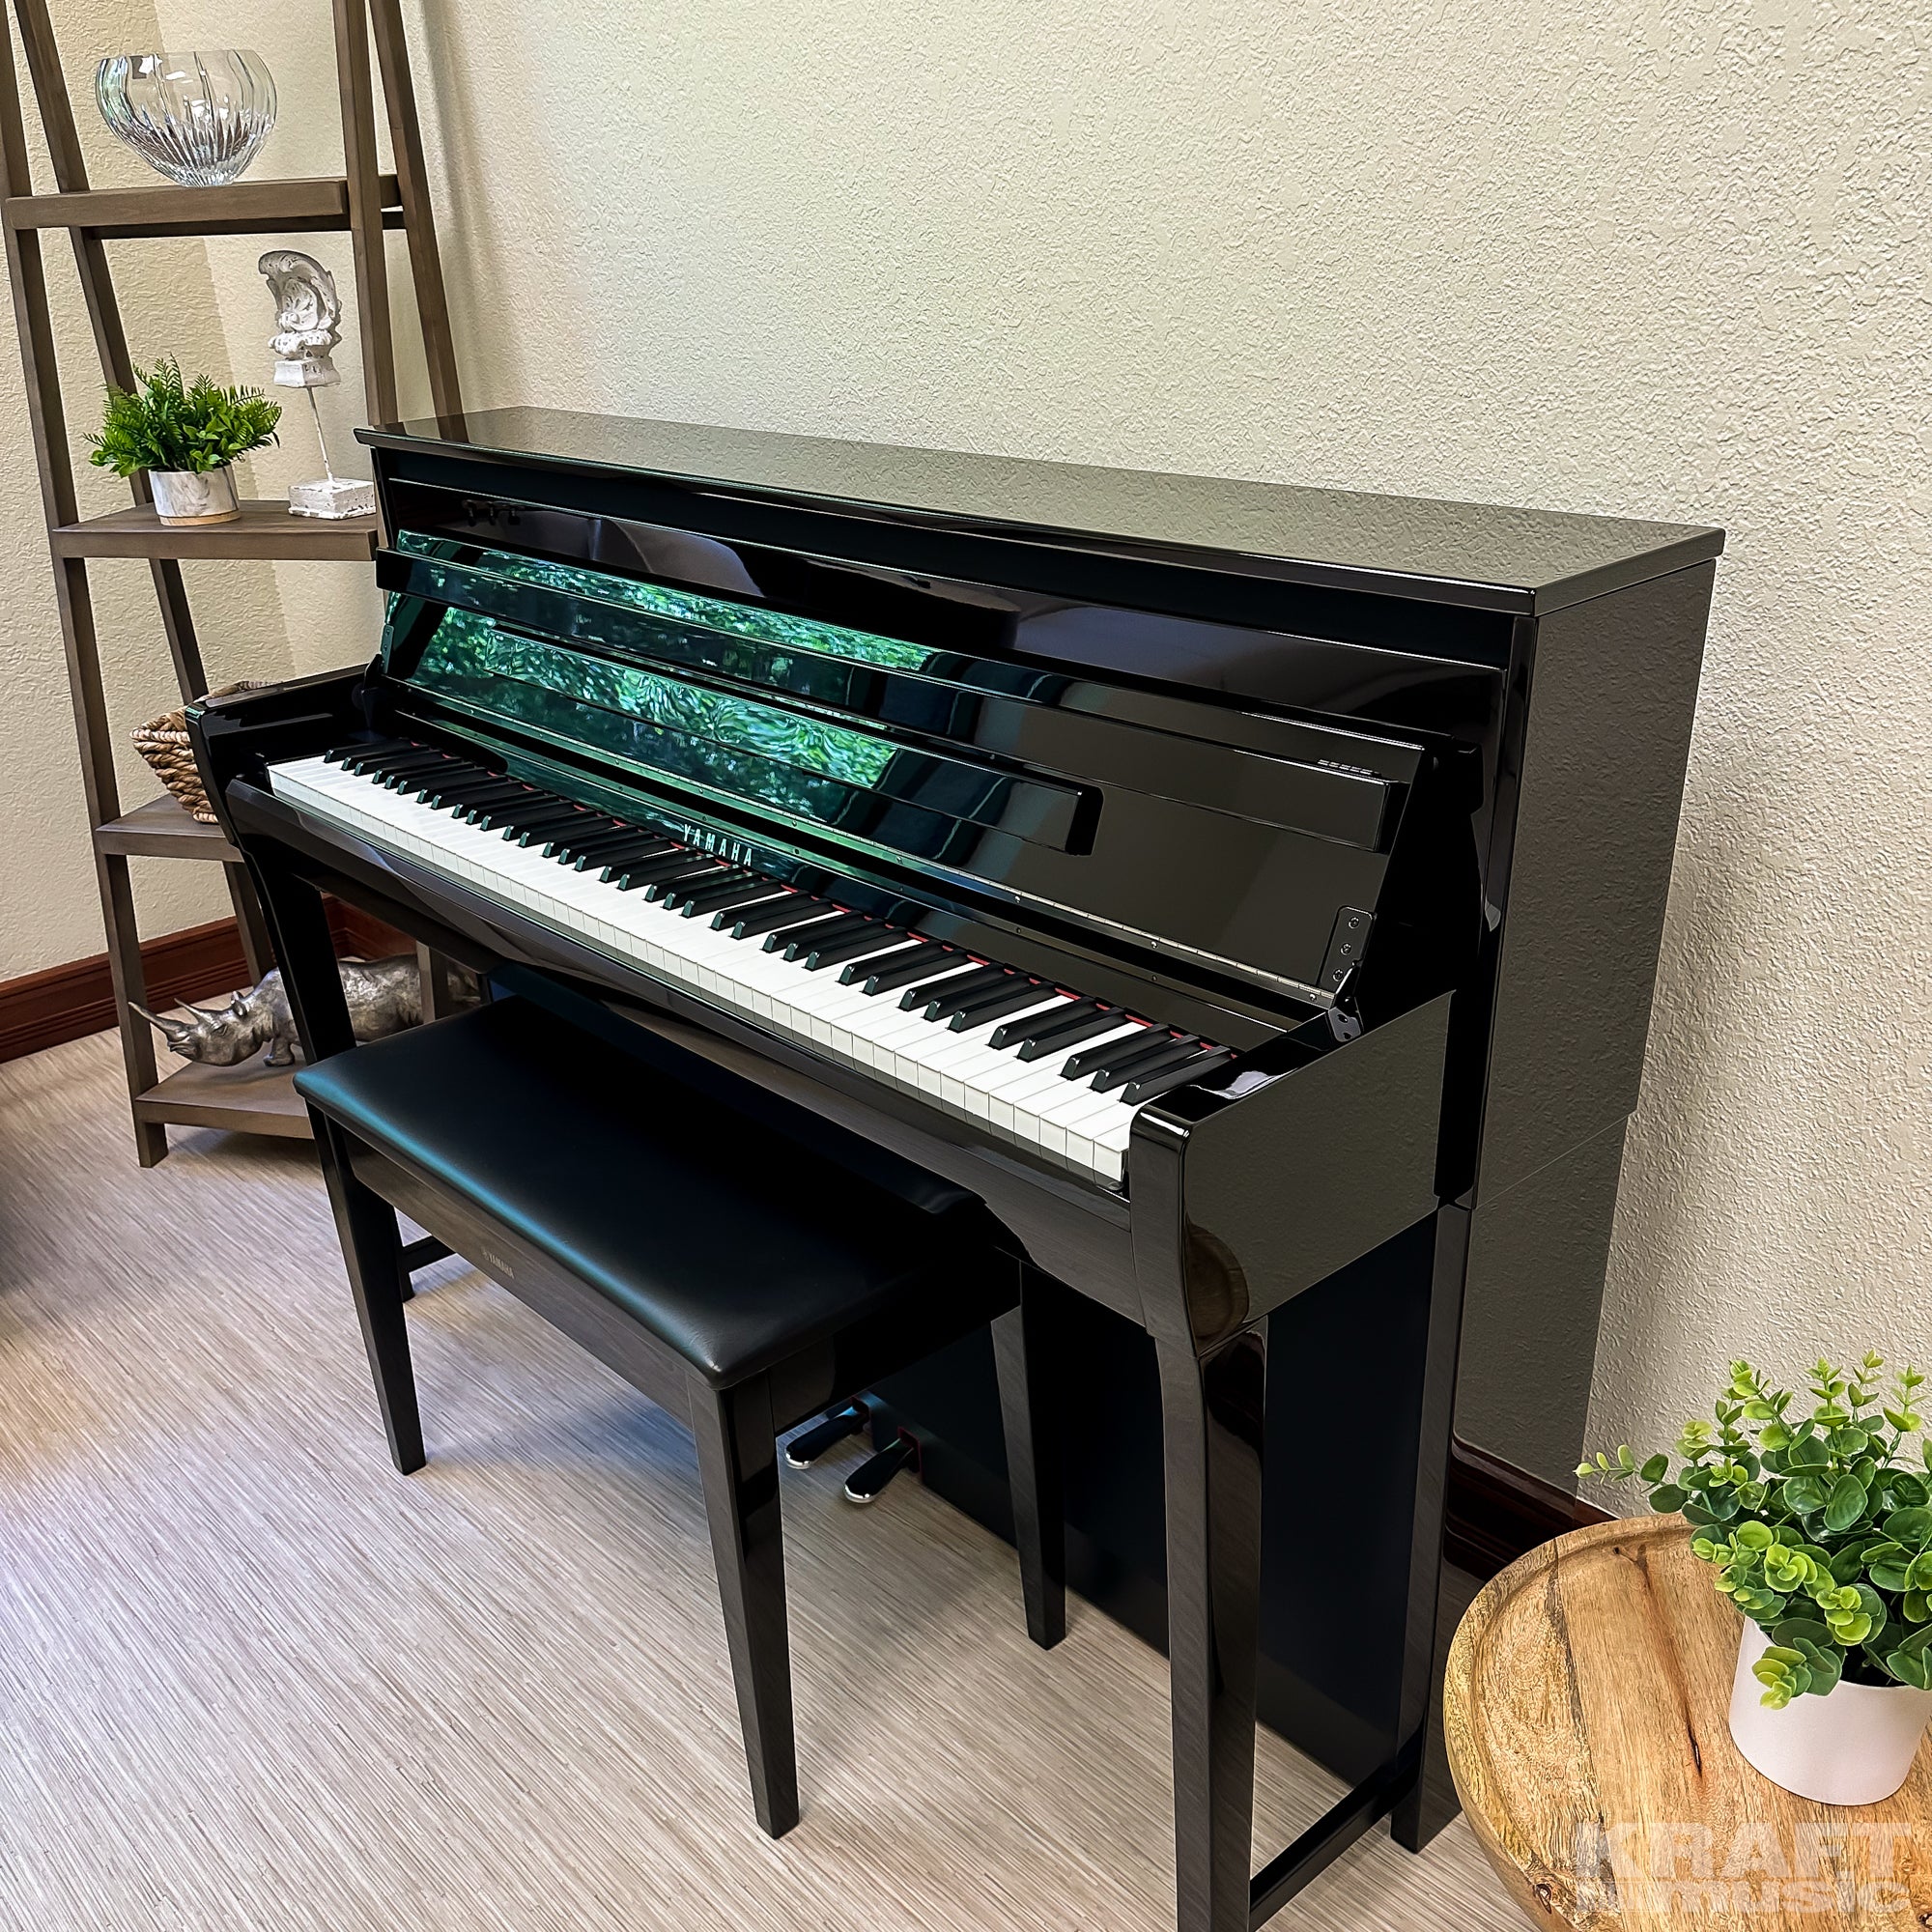 Yamaha Clavinova CLP-785 Digital Piano - Polished Ebony - in a stylish living room facing left